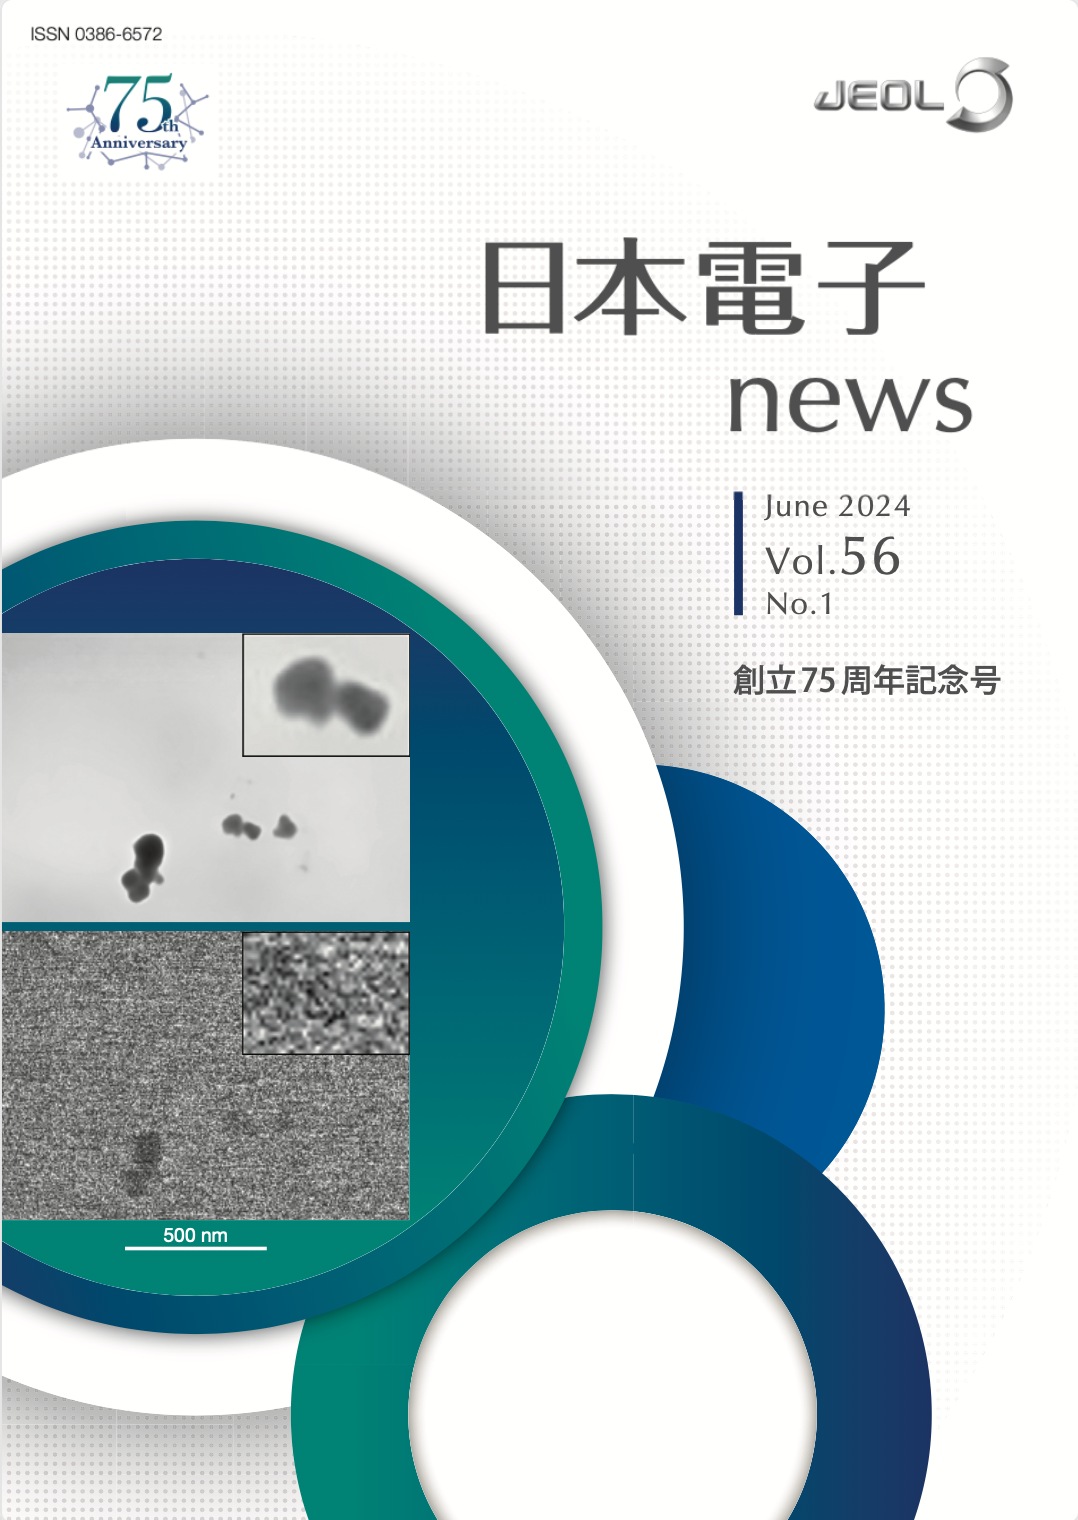 日本電子news Vol.56 No.1